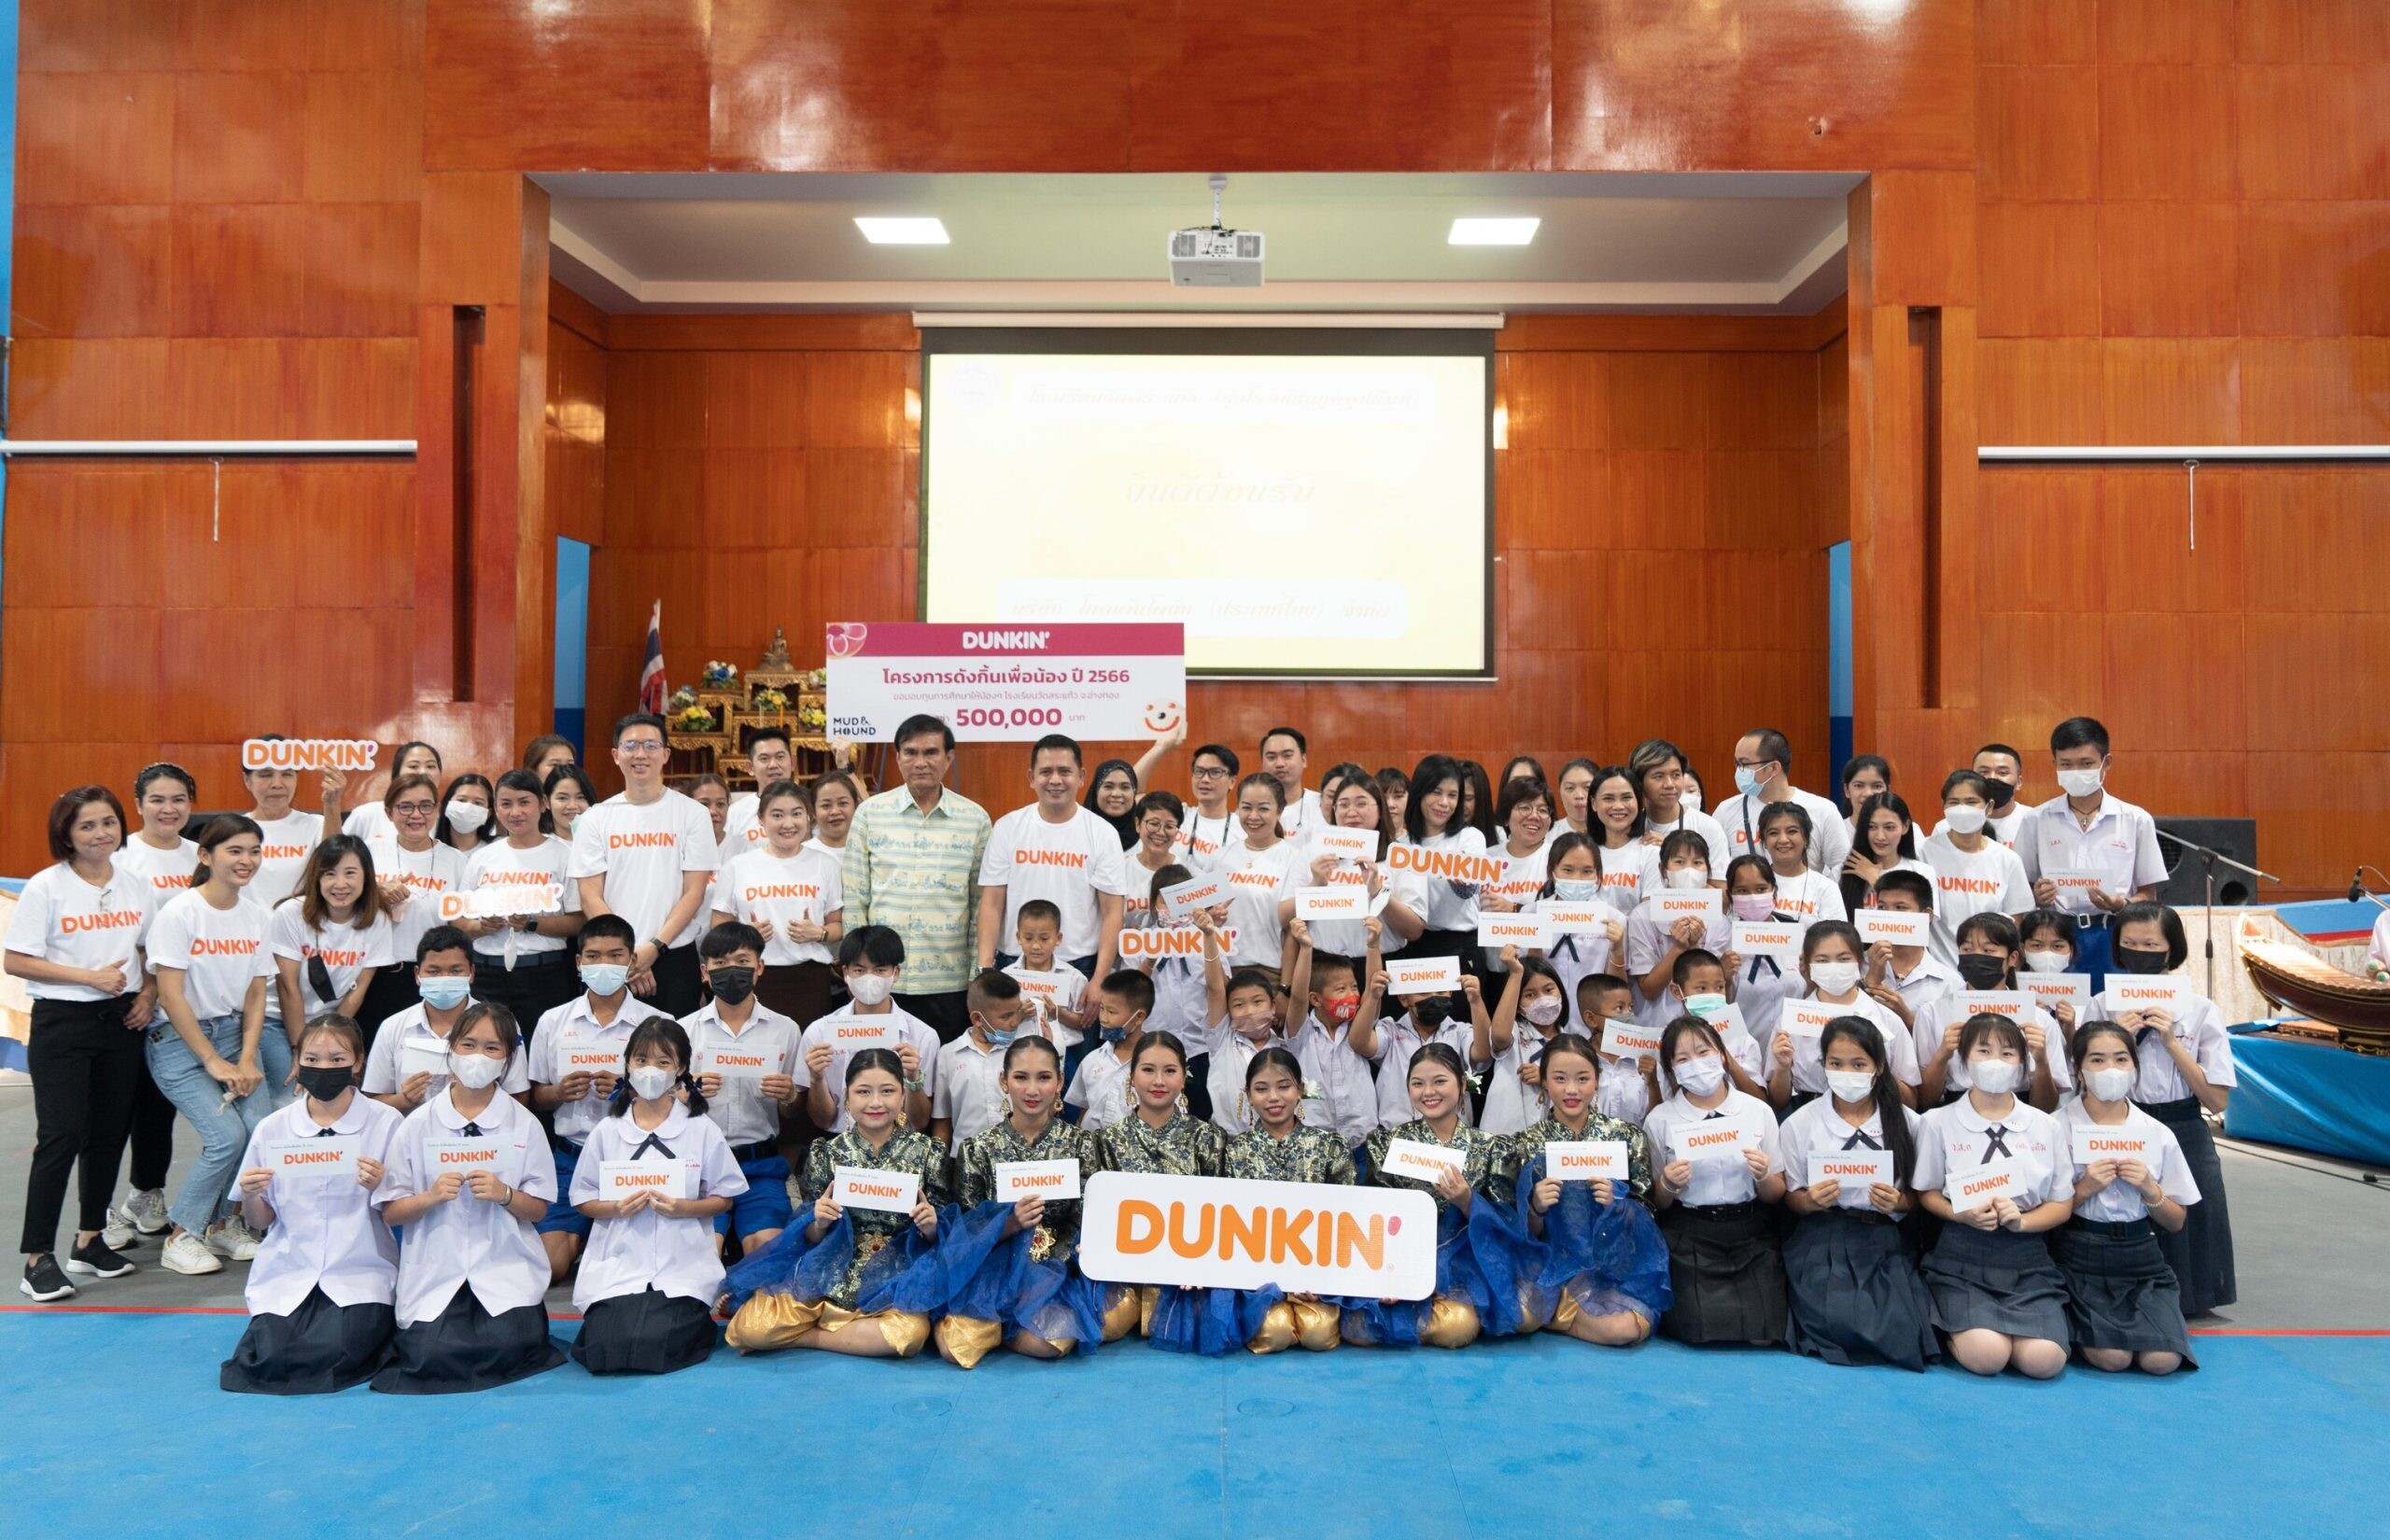 Dunkin' ชวนลูกค้าร่วมทำดีสร้างโอกาสเด็กไทย จัดโครงการ "ดังกิ้นเพื่อน้อง ปี 2566" มอบทุนการศึกษา 1,000,000 บาท "โรงเรียนวัดสระแก้ว - โรงเรียนบ้านเข็กน้อย"